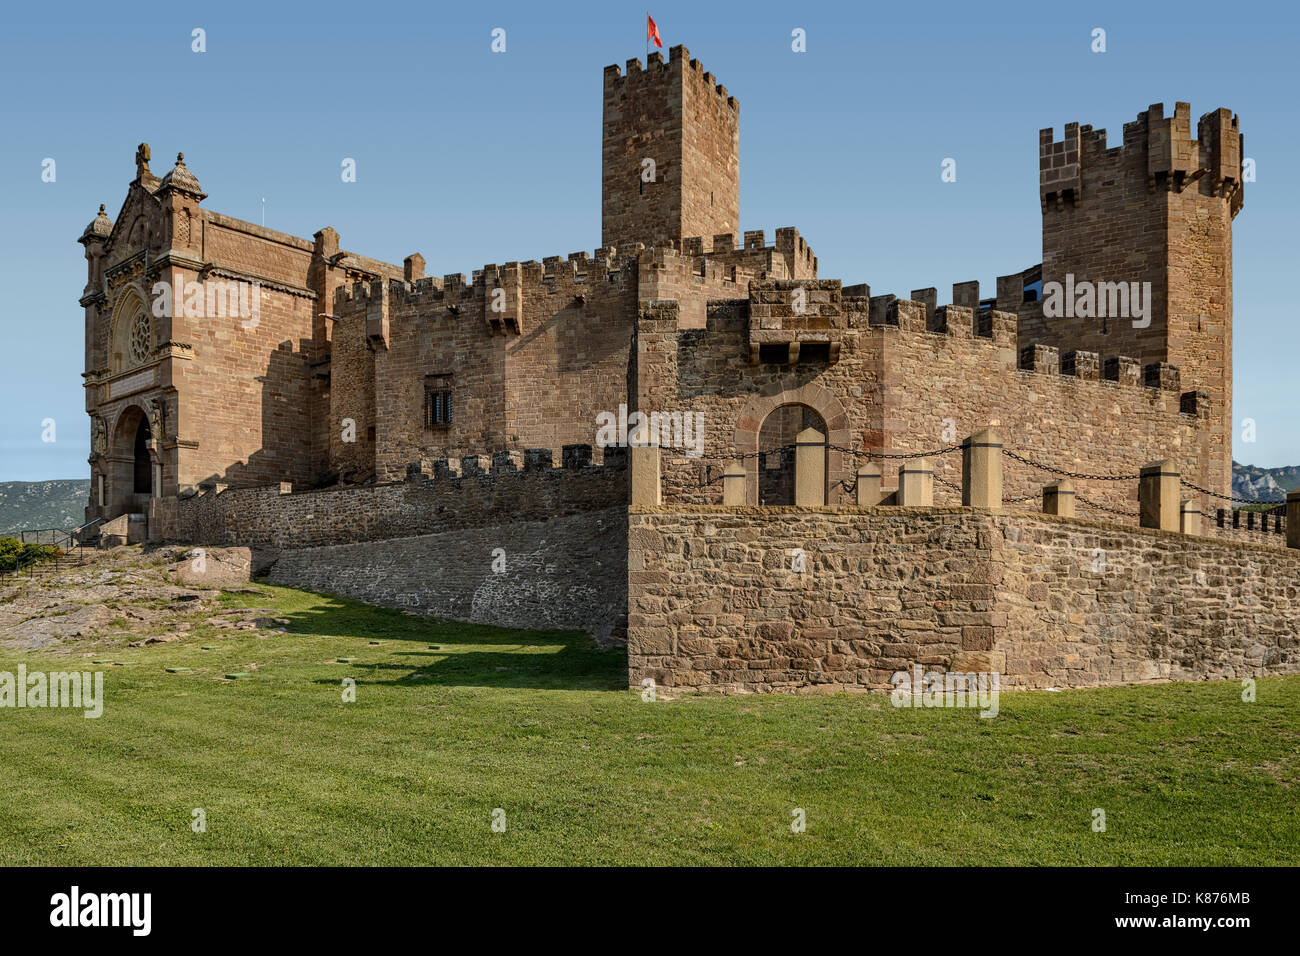 El castillo de Javier, en la provincia de Navarra, región de España. Famoso por ser el lugar de nacimiento de San Francisco Javier. Foto de stock